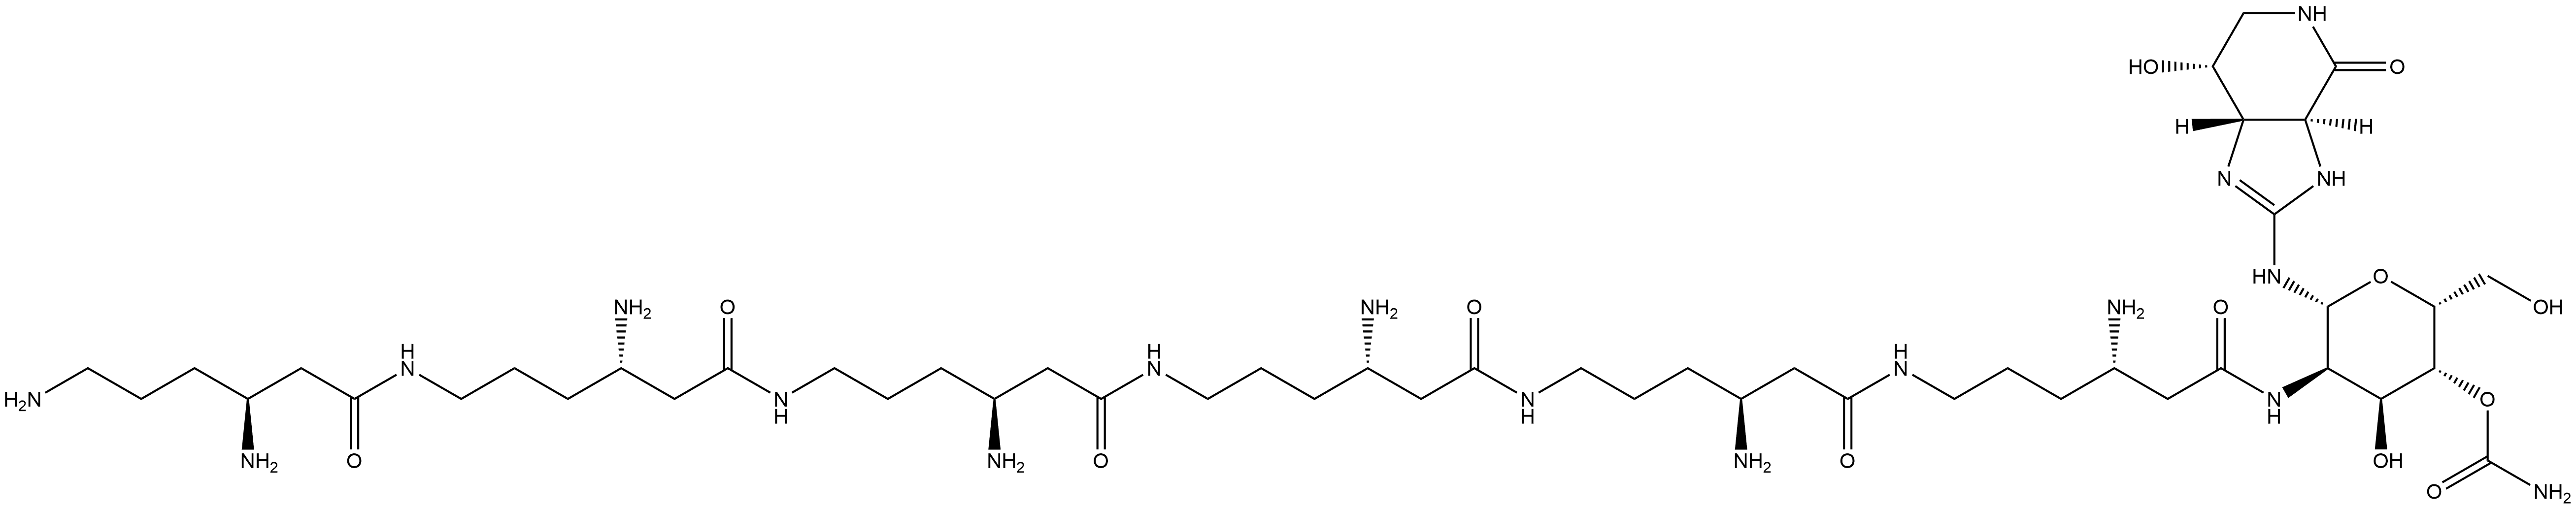 4H-Imidazo[4,5-c]pyridin-4-one, 2-[[4-O-(aminocarbonyl)-2-deoxy-2-[[(3S,10S,17S,24S,31S,38S)-3,10,17,24,31,38,41-heptaamino-1,8,15,22,29,36-hexaoxo-7,14,21,28,35-pentaazahentetracont-1-yl]amino]-β-D-gulopyranosyl]amino]-3,3a,5,6,7,7a-hexahydro-7-hydroxy-, (3aS,7R,7aS)- Struktur